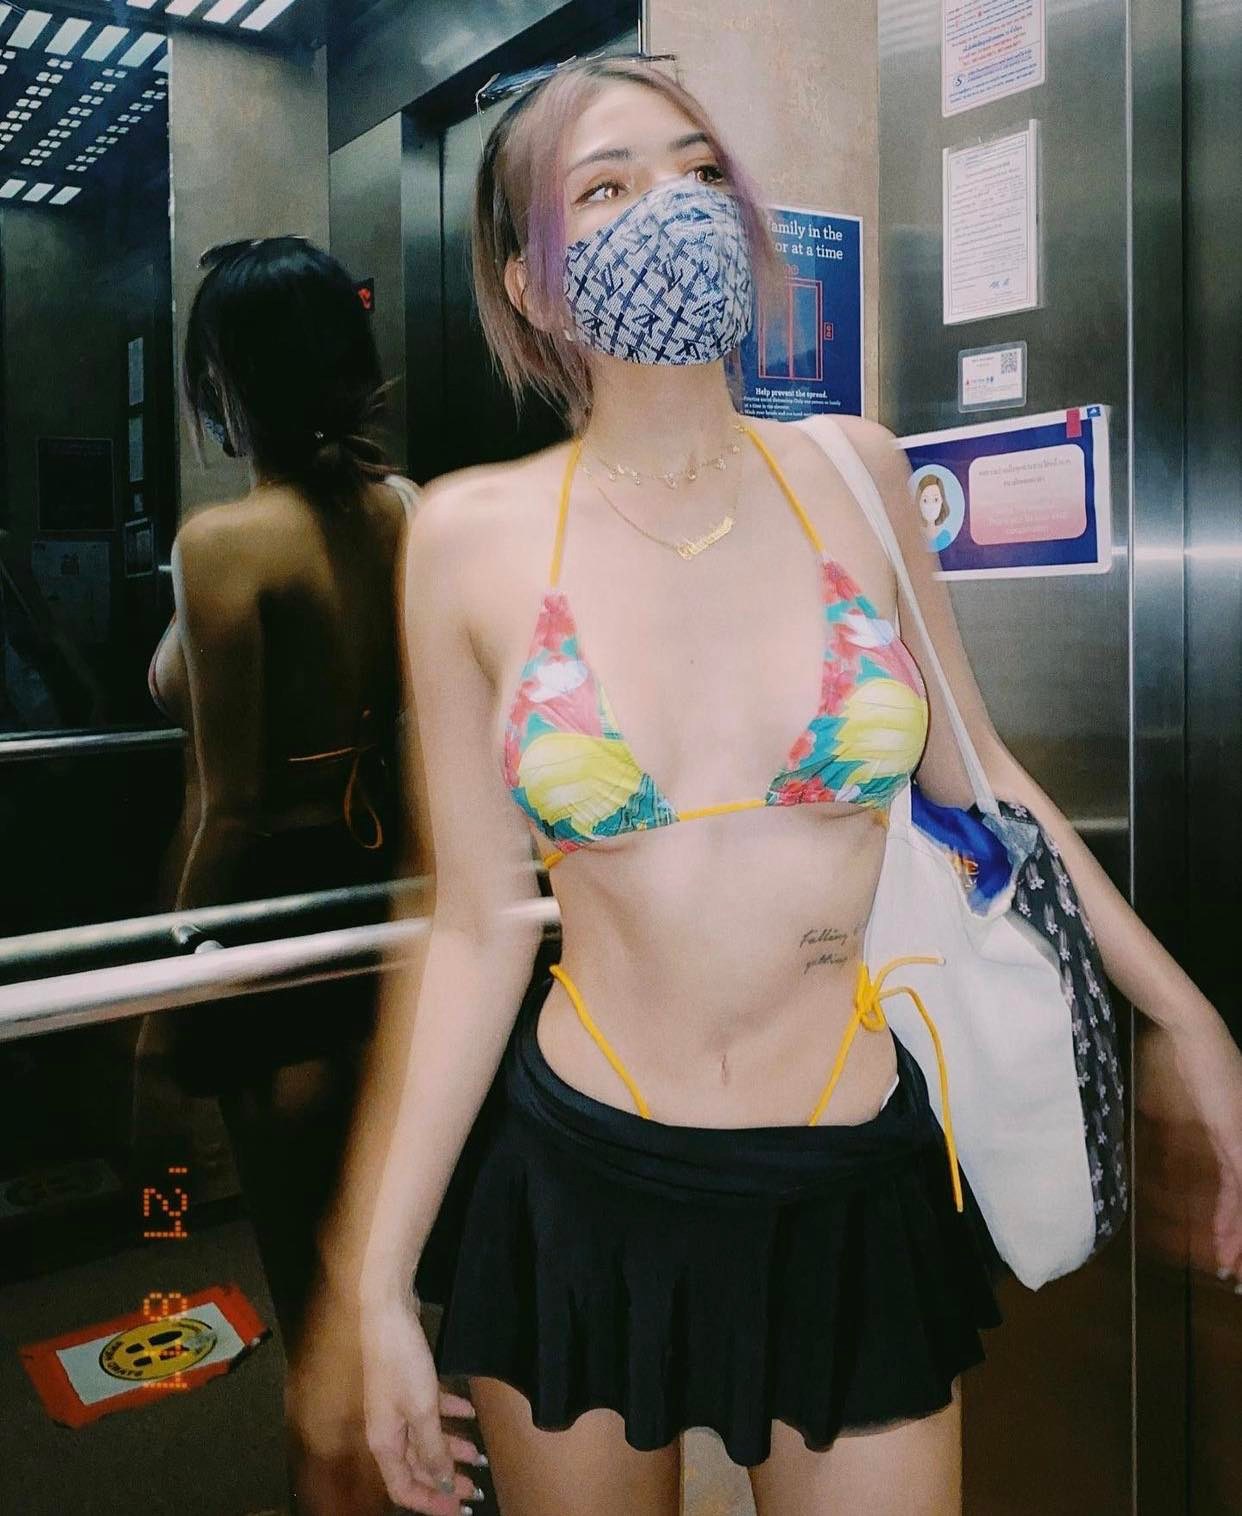 Nữ du học sinh gây chú ý khi chuyên mặc bikini trong thang máy - 1